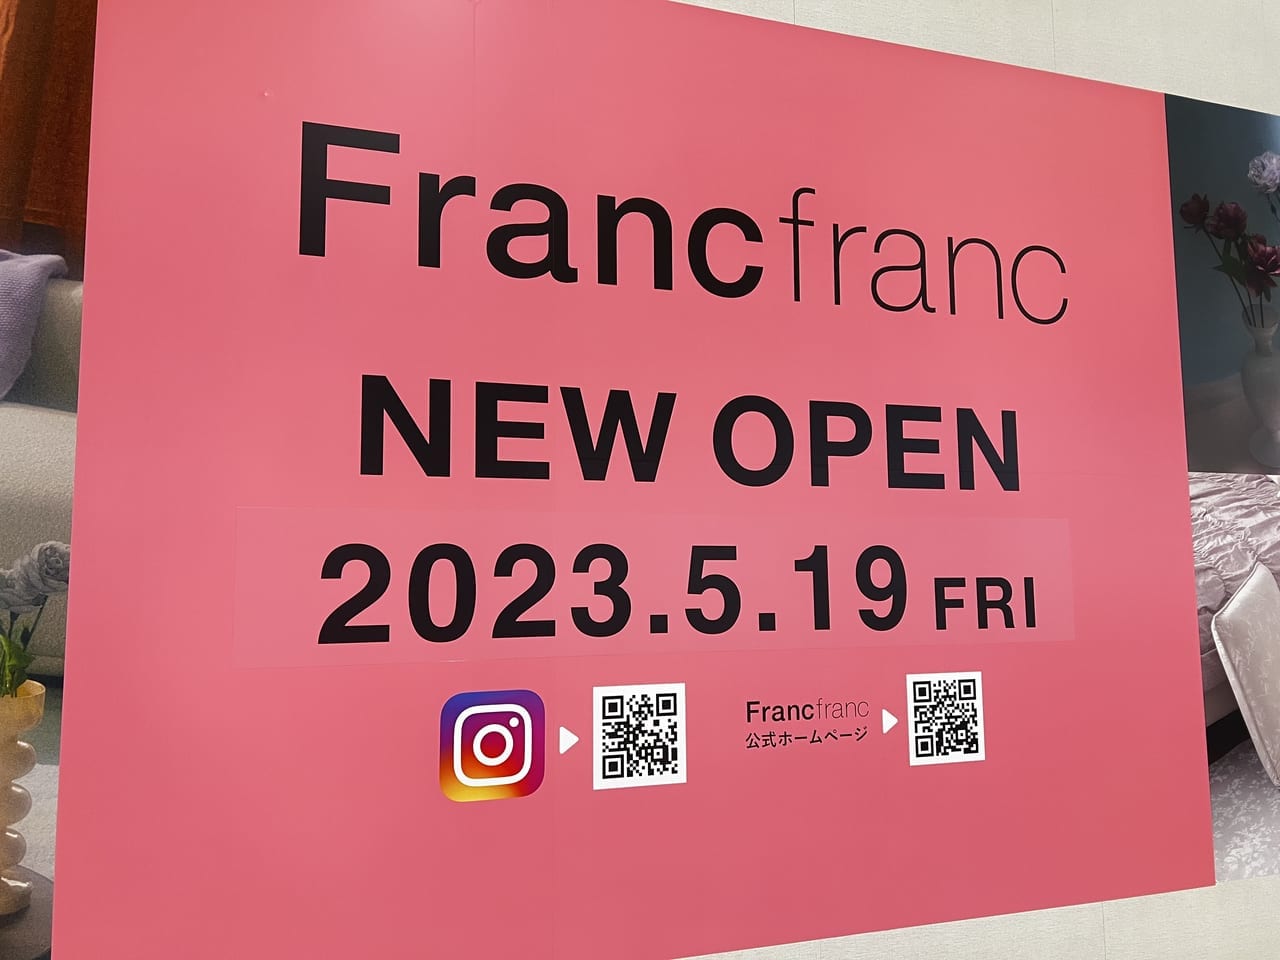 【三郷市】ららぽーと新三郷に「Francfranc」がオープンするそうです。素敵なインテリアや雑貨で新生活を彩るのにぴったりですね。